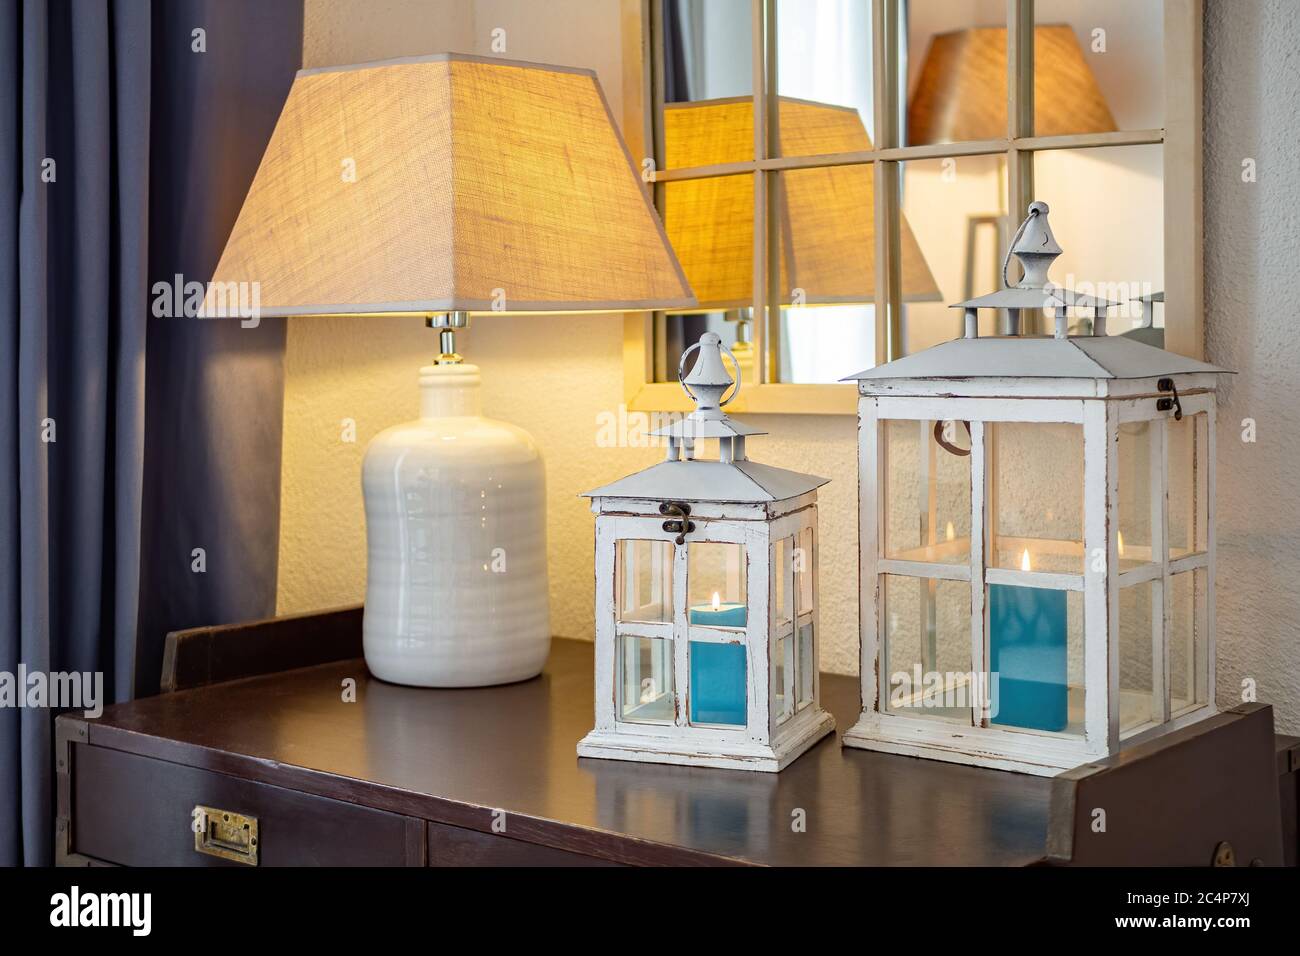 Lanternes en bois vintage, chandeliers avec bougies bleues à l'intérieur, placé sur une table sombre avec lampe dans une pièce confortable Banque D'Images